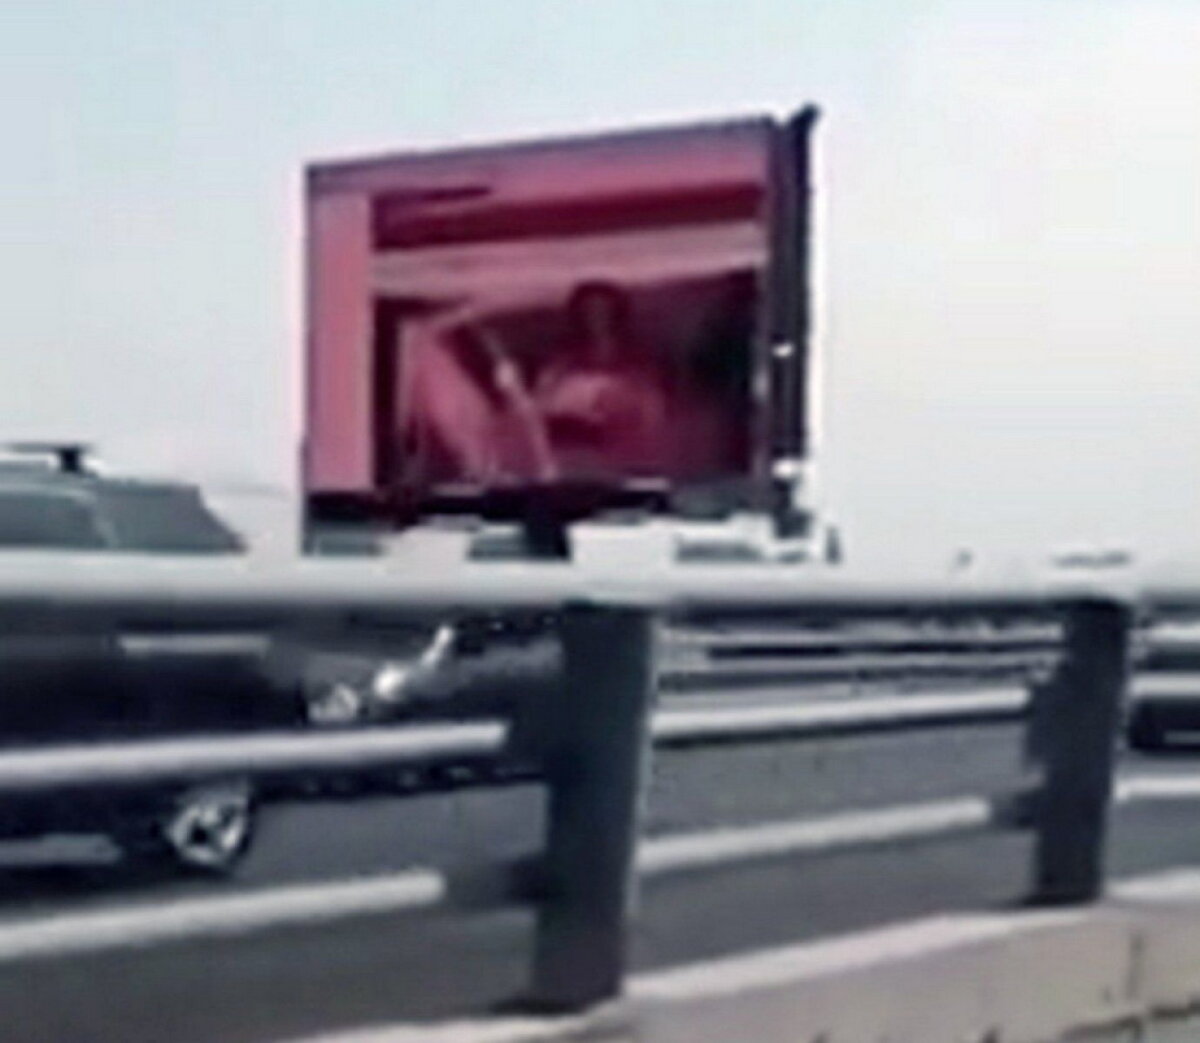 VIDEO Imagini indecente pe un ecran publicitar de pe autostradă